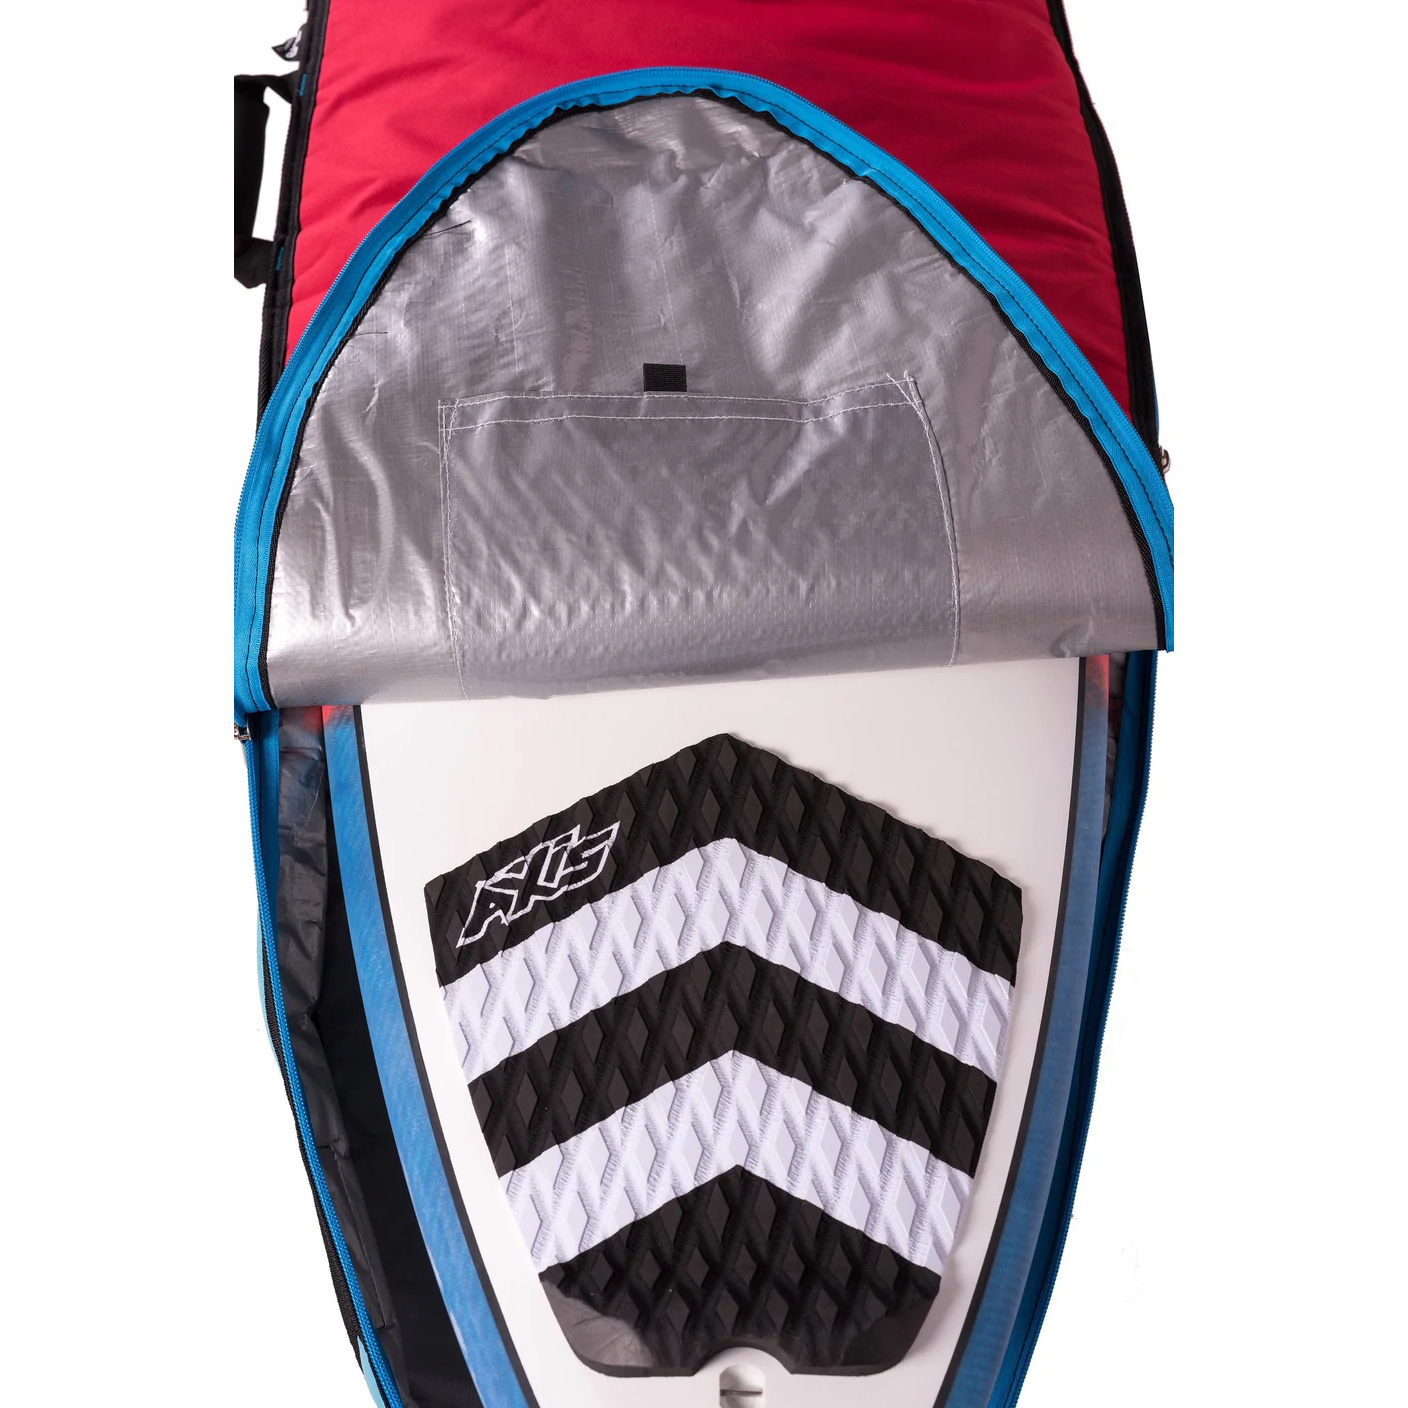 AXIS Kite Surfboard Bag